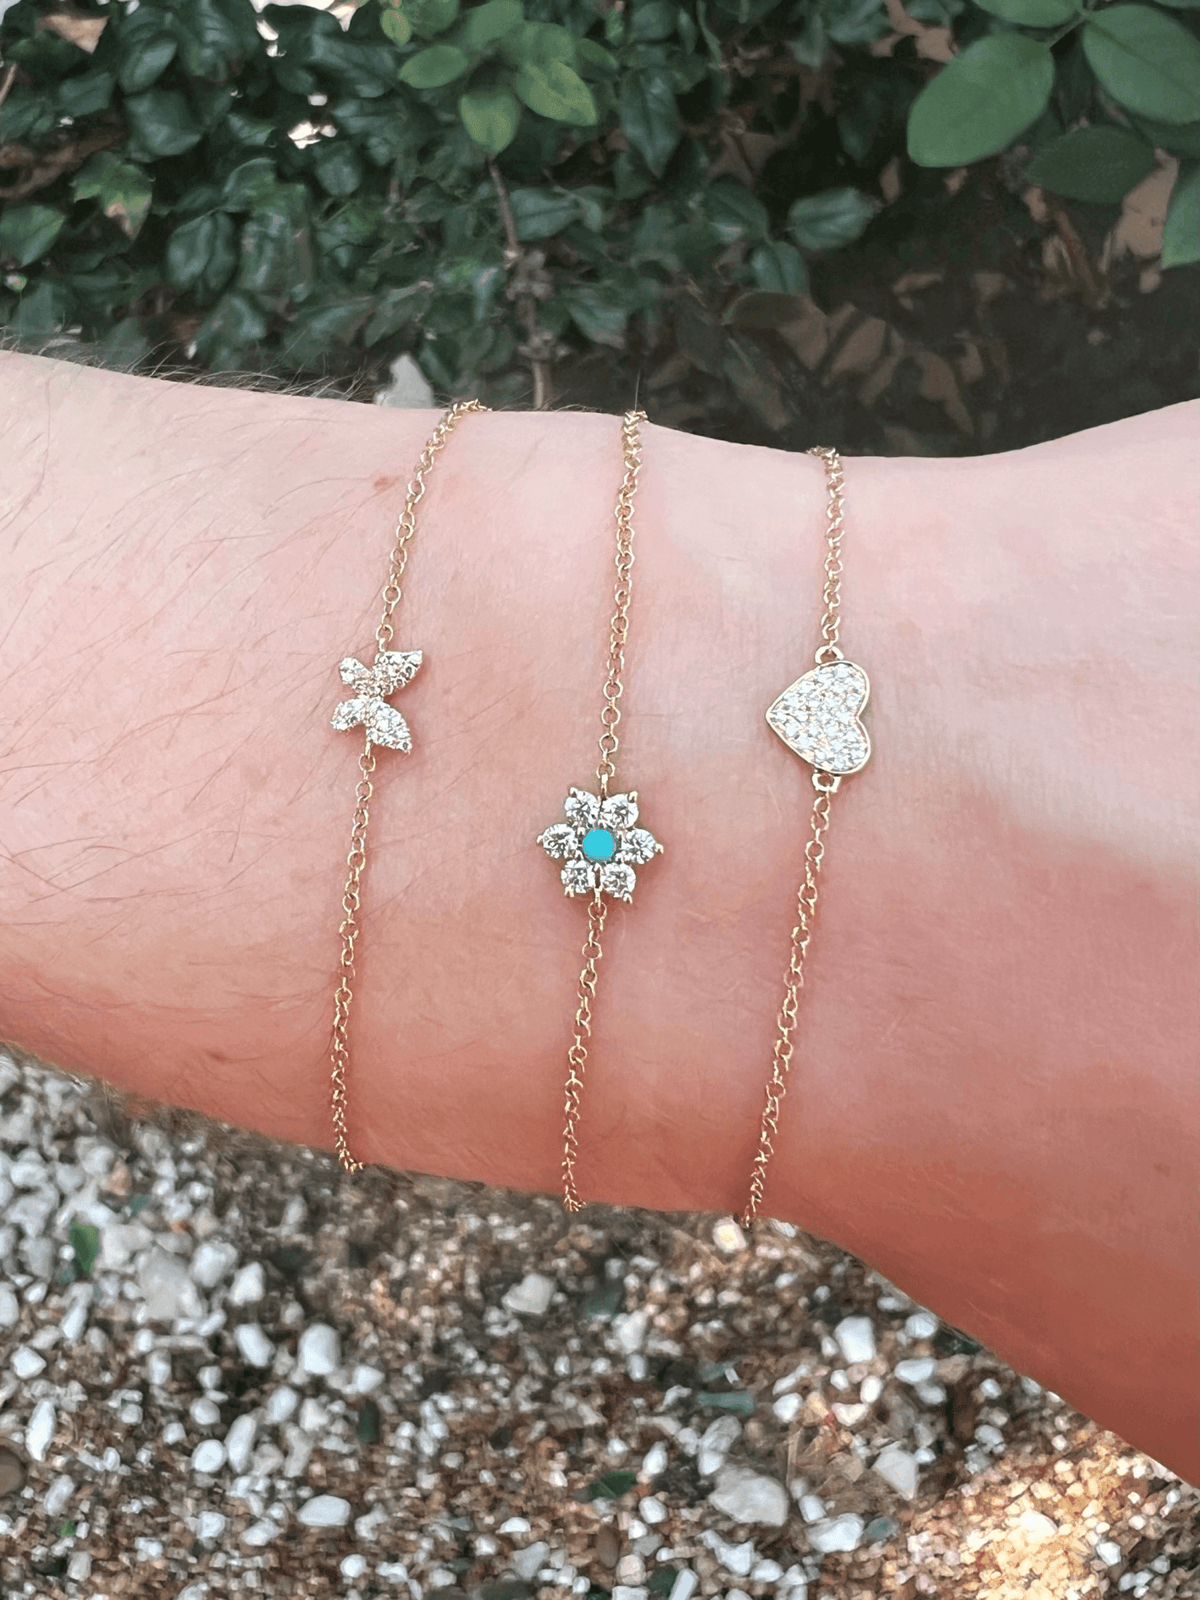 pave diamond single butterfly chain bracelet with turquoise and round diamond chain bracelet and single pave diamond heat chain bracelet on model